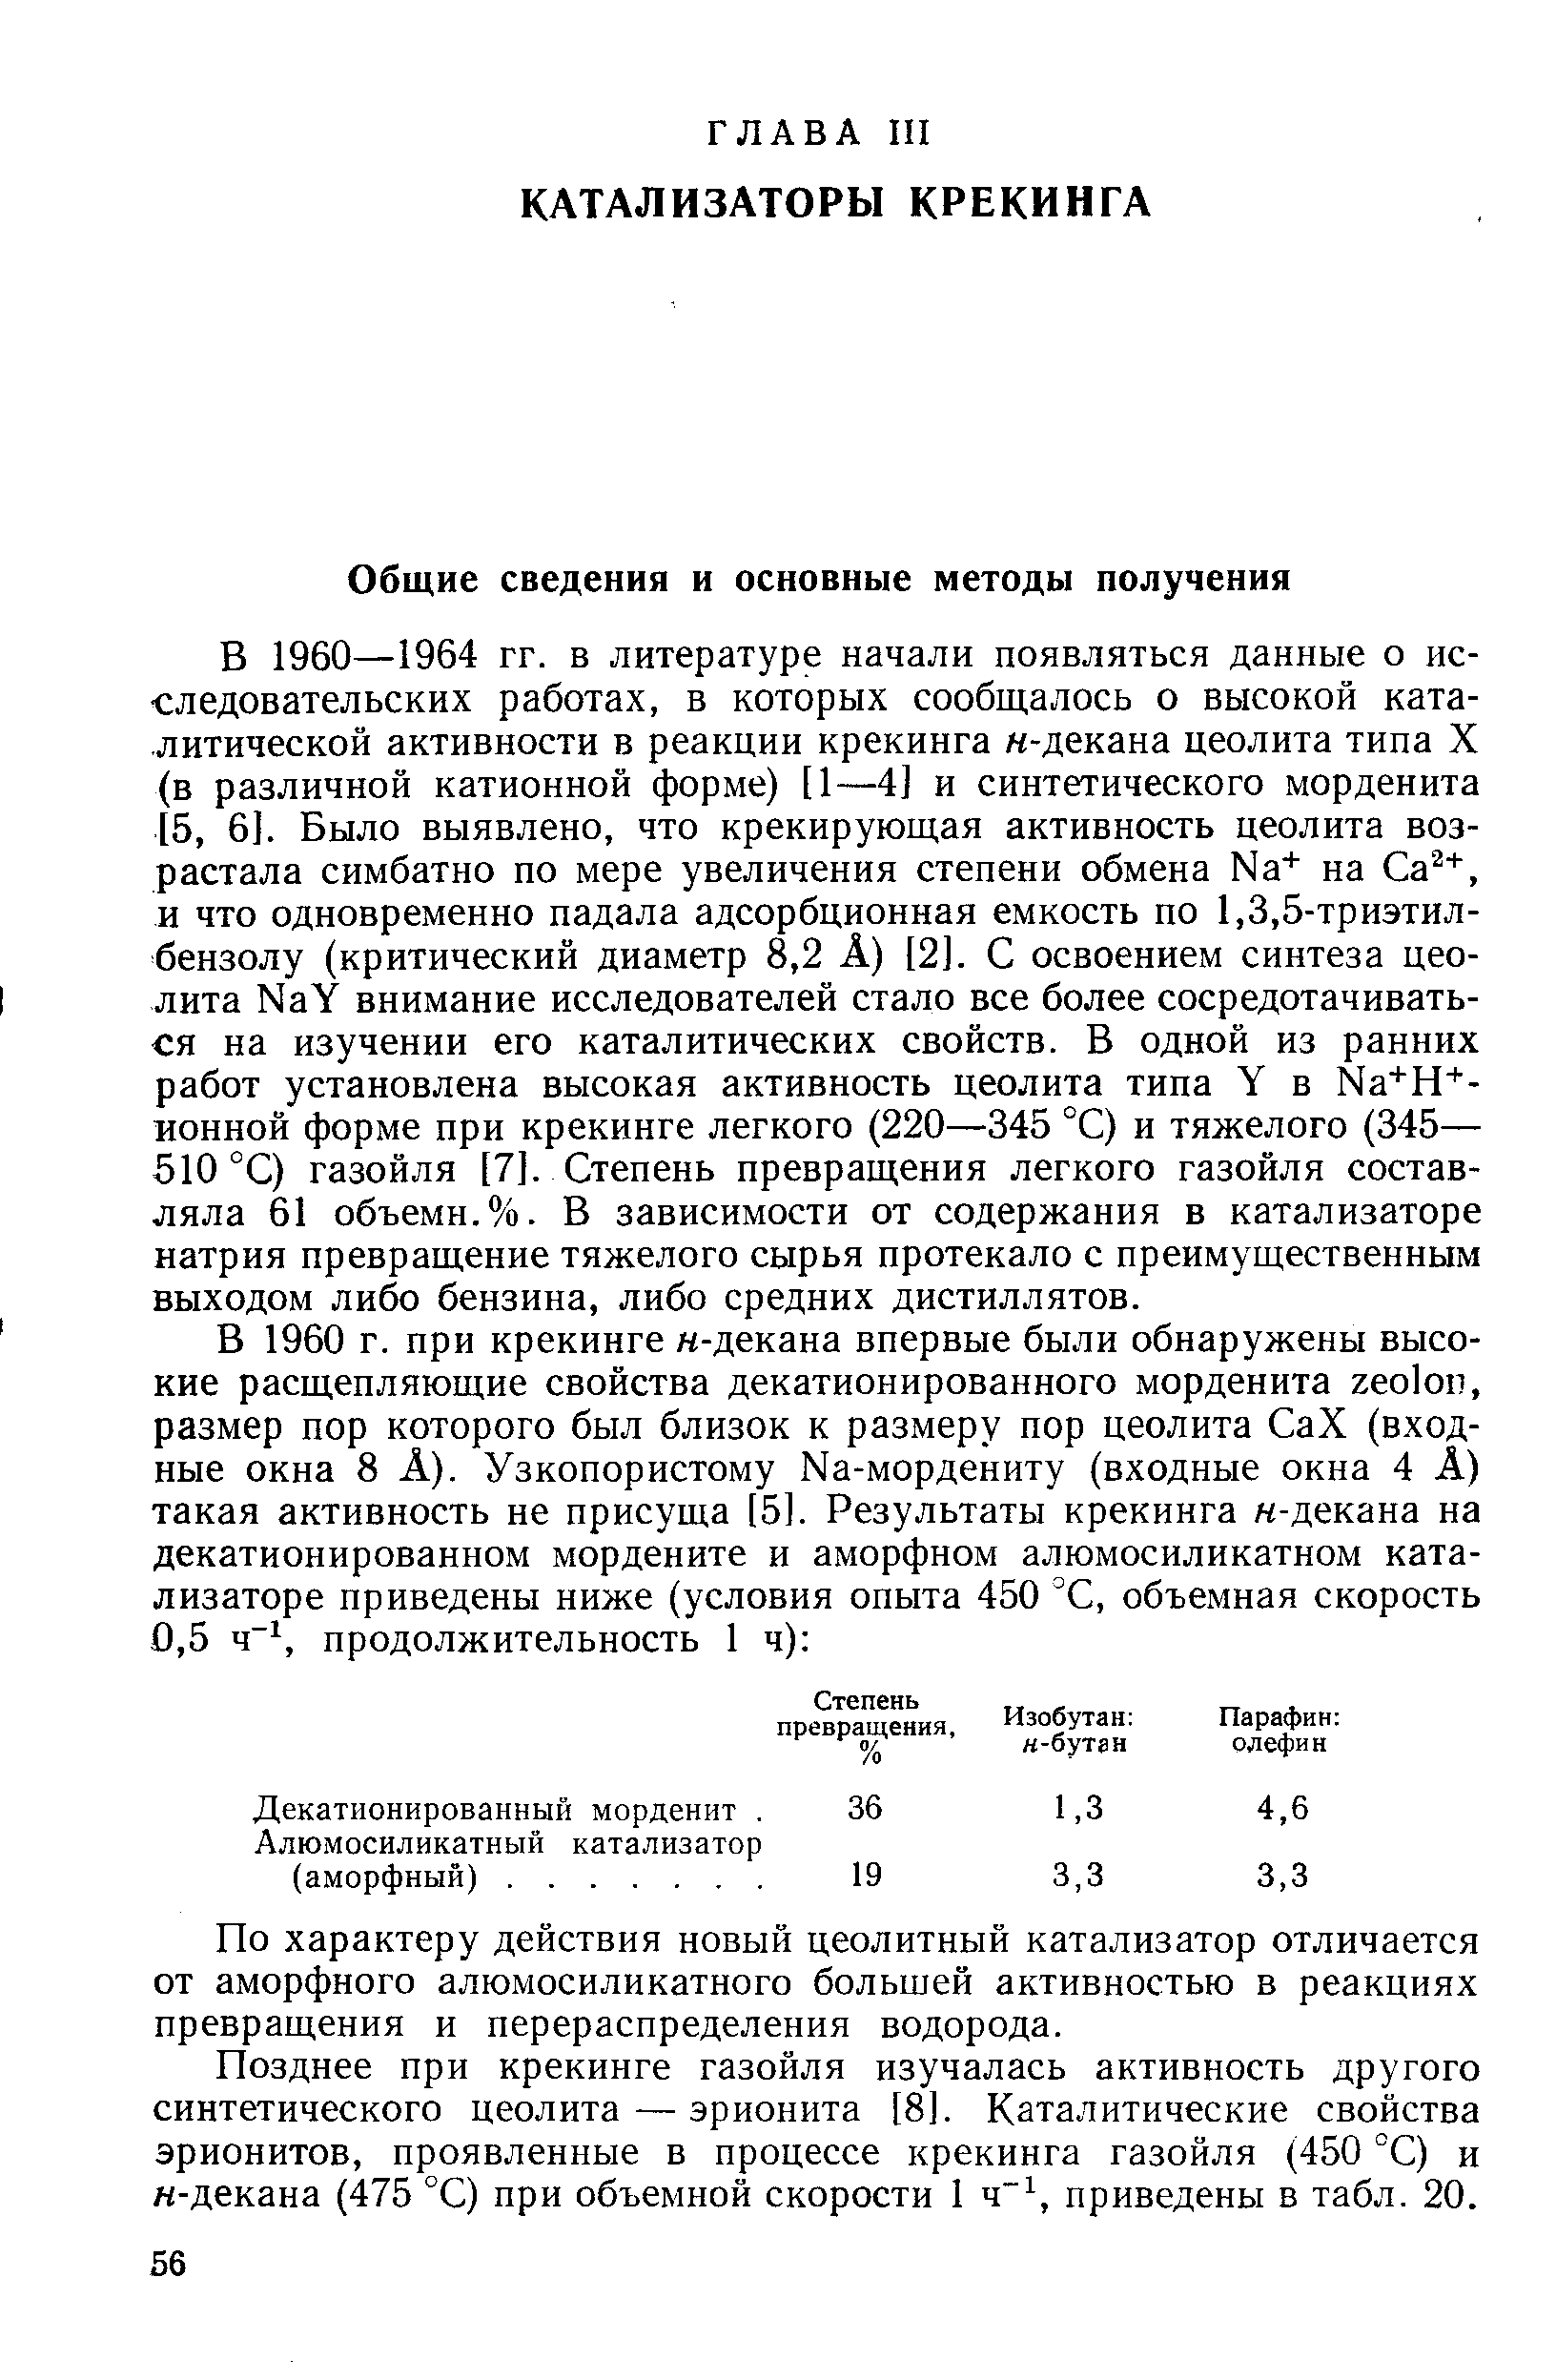 В 1960—1964 гг. в литературе начали появляться данные о исследовательских работах, в которых сообщалось о высокой каталитической активности в реакции крекинга н-декана цеолита типа X (в различной катионной форме) [1—4] и синтетического морденита [5, 6]. Было выявлено, что крекирующая активность цеолита возрастала симбатно по мере увеличения степени обмена Na на Са , и что одновременно падала адсорбционная емкость по 1,3,5-триэтил-бензолу (критический диаметр 8,2 А) [2]. С освоением синтеза цеолита NaY внимание исследователей стало все более сосредотачиваться на изучении его каталитических свойств. В одной из ранних работ установлена высокая активность цеолита типа Y в Na+H -ионной форме при крекинге легкого (220—345 °С) и тяжелого (345— 510 °С) газойля [7]. Степень превращения легкого газойля составляла 61 объемн. %. В зависимости от содержания в катализаторе натрия превращение тяжелого сырья протекало с преимущественным выходом либо бензина, либо средних дистиллятов.